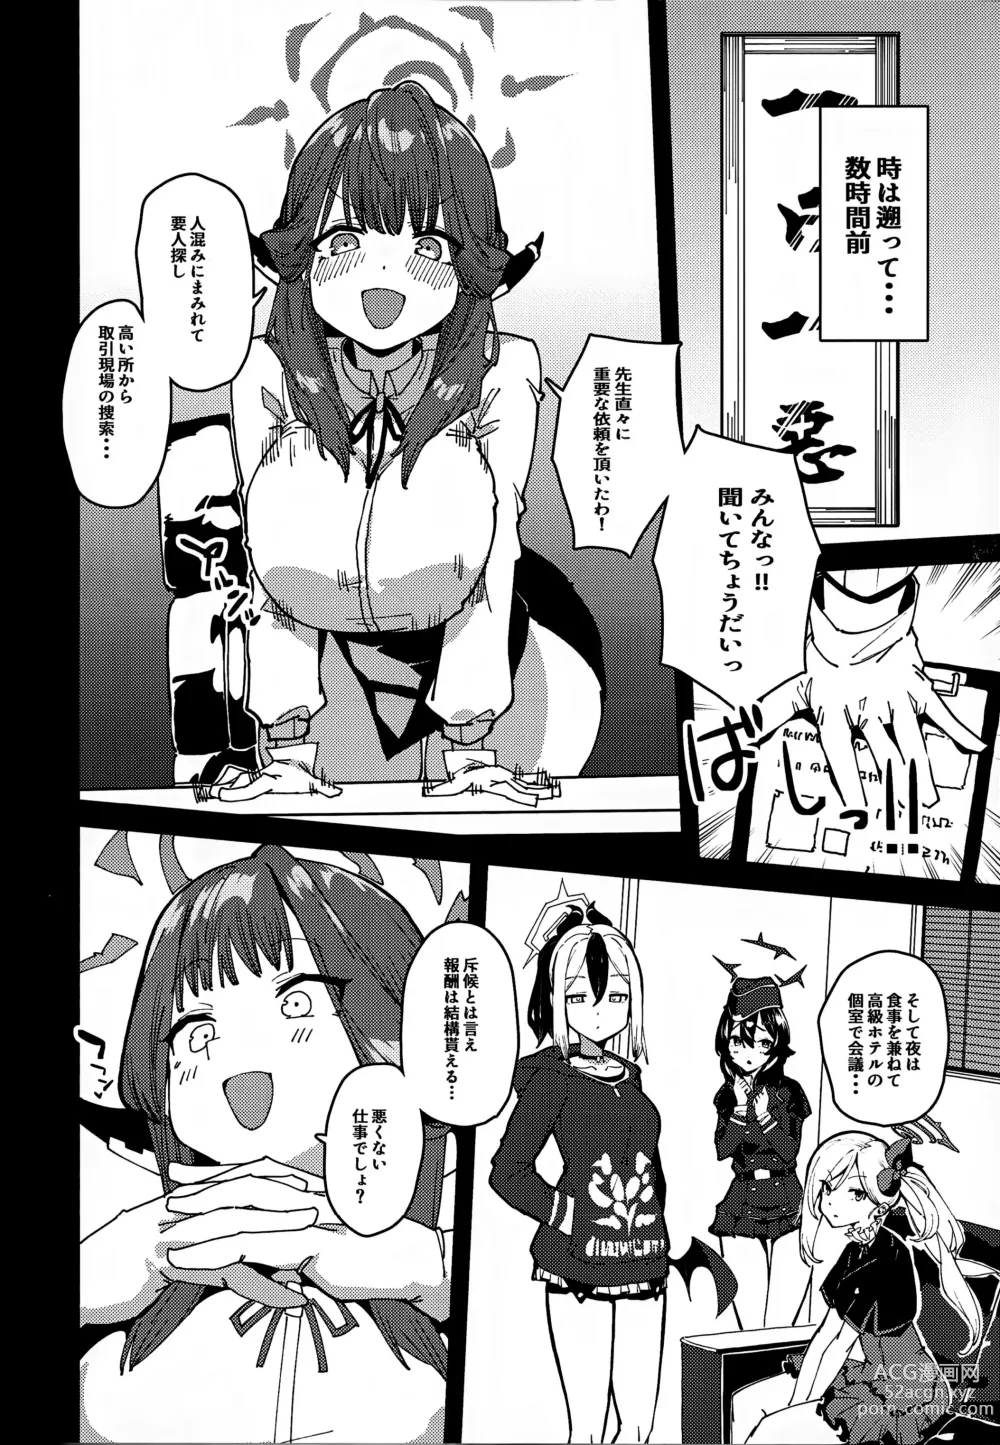 Page 3 of doujinshi Aru-chan Shachou Aigan Doubutsu ni Naru